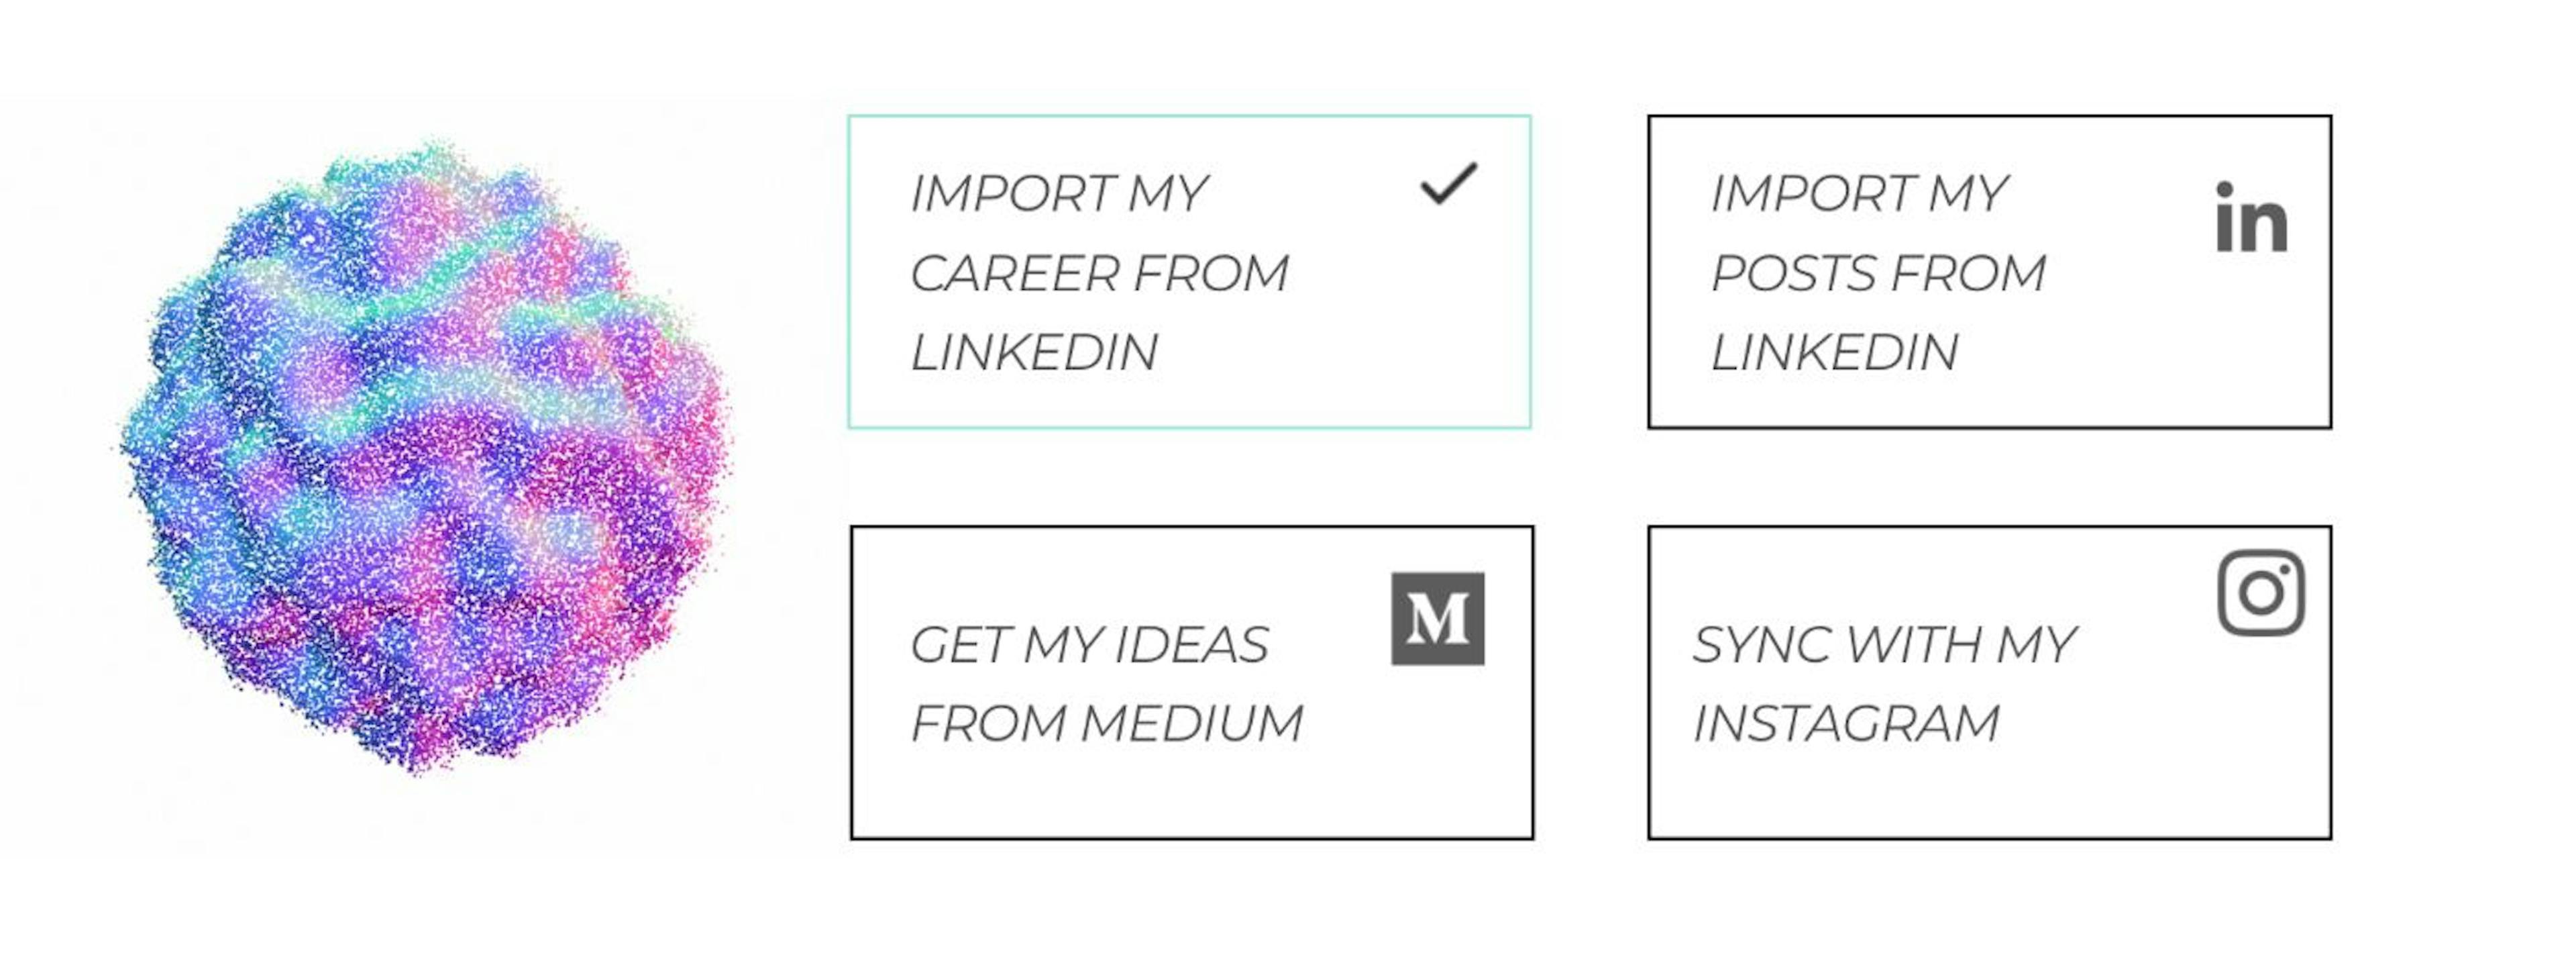 Tienen pequeños módulos lindos para importar desde mi LinkedIn, mi Instagram, importar desde Medium...